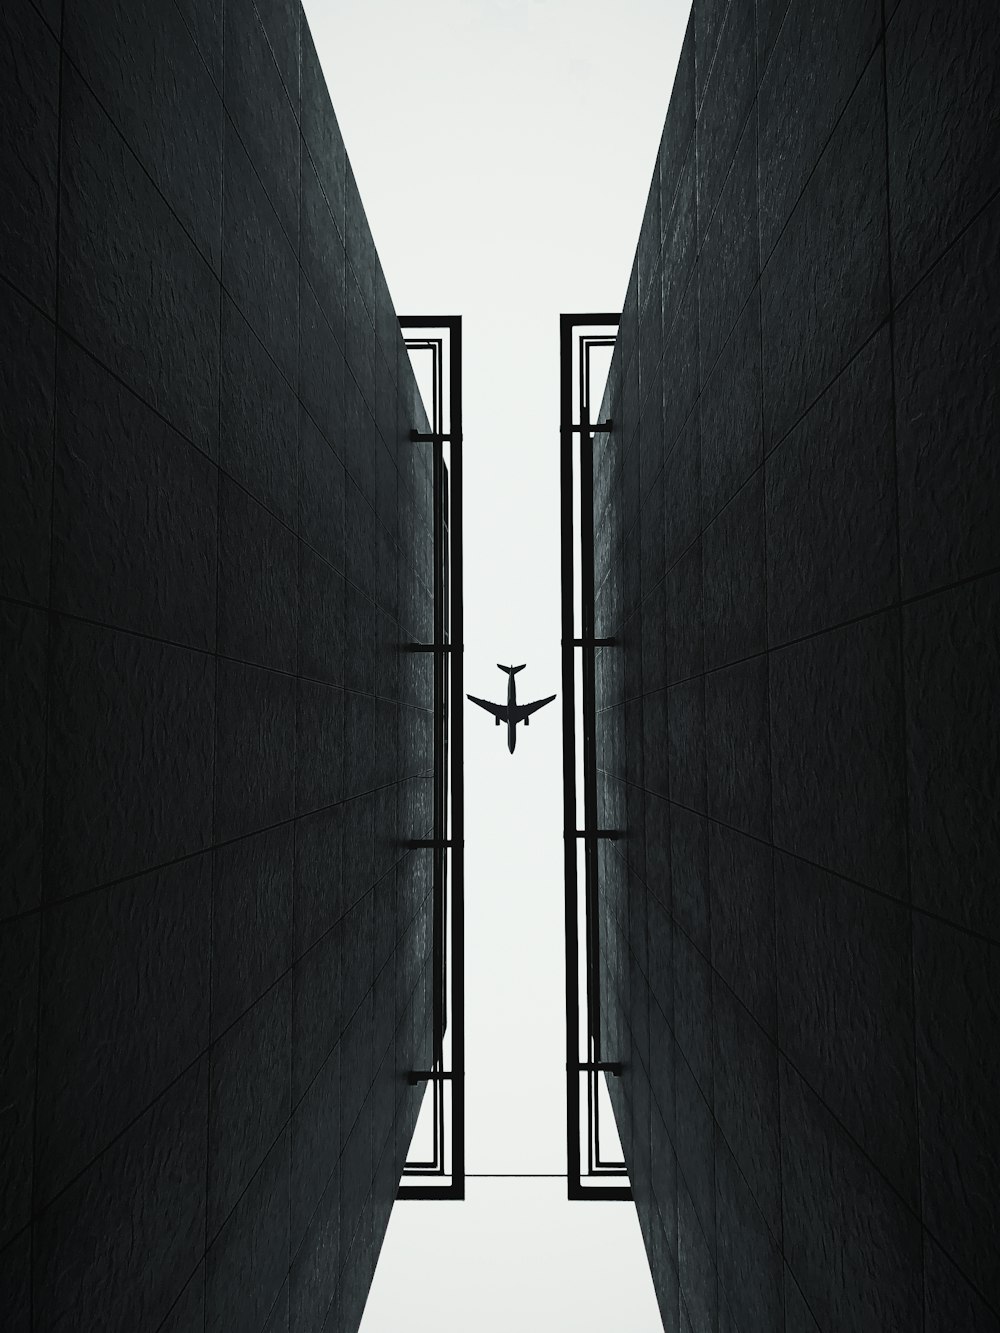 Un avión vuela por el aire entre dos edificios